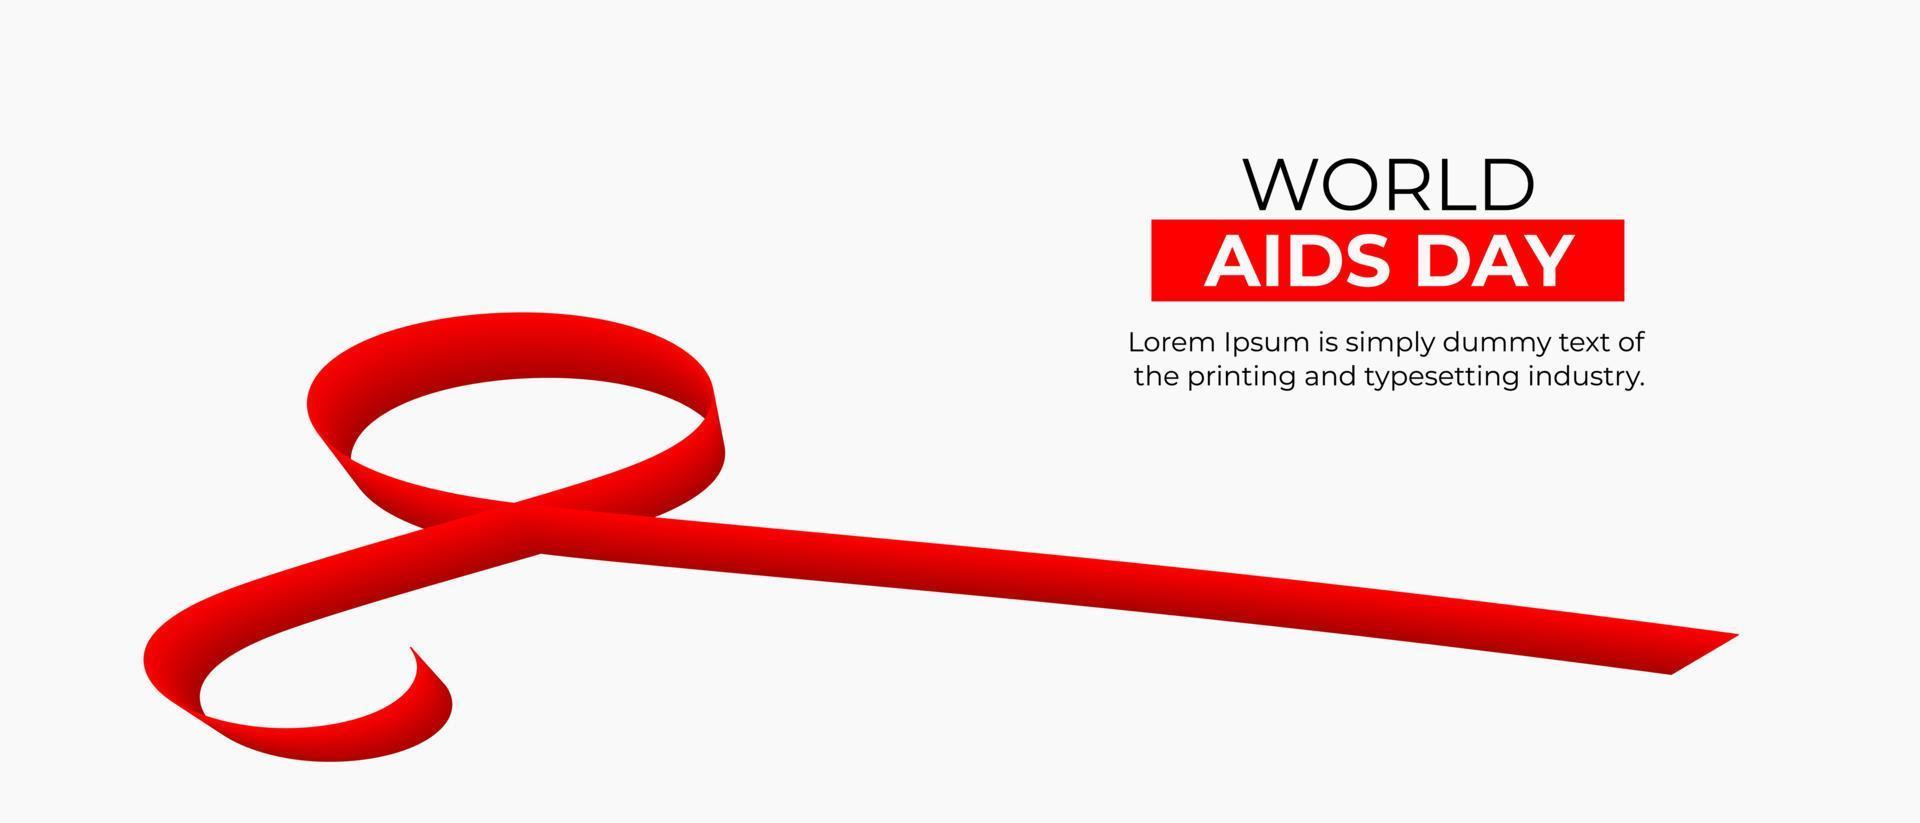 fond de la journée mondiale du sida. fond de ruban de support rouge. journée mondiale du sida et mois national de sensibilisation au vih sida et au vieillissement avec ruban rouge vecteur